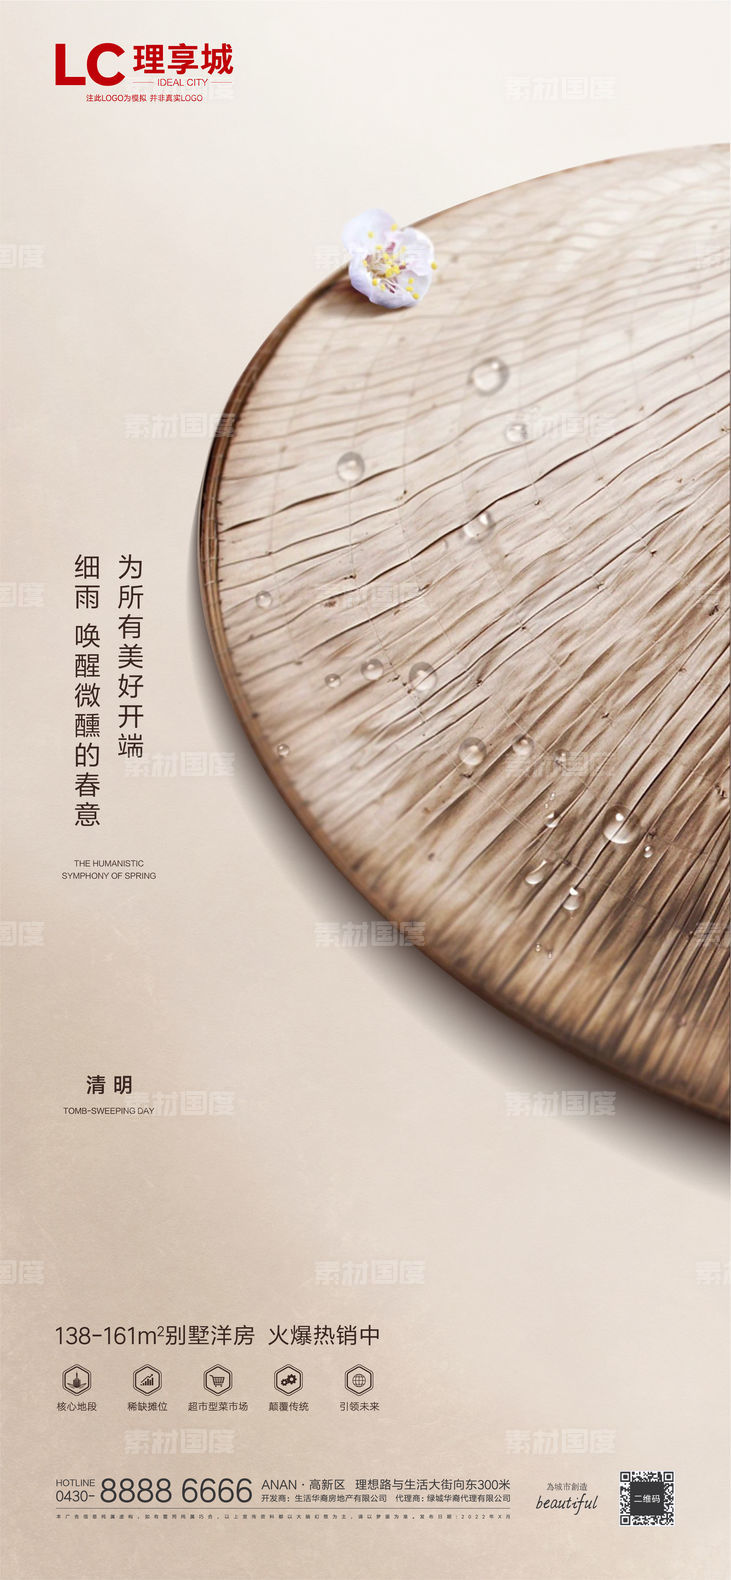 海报 地产 中国传统 节日 清明节